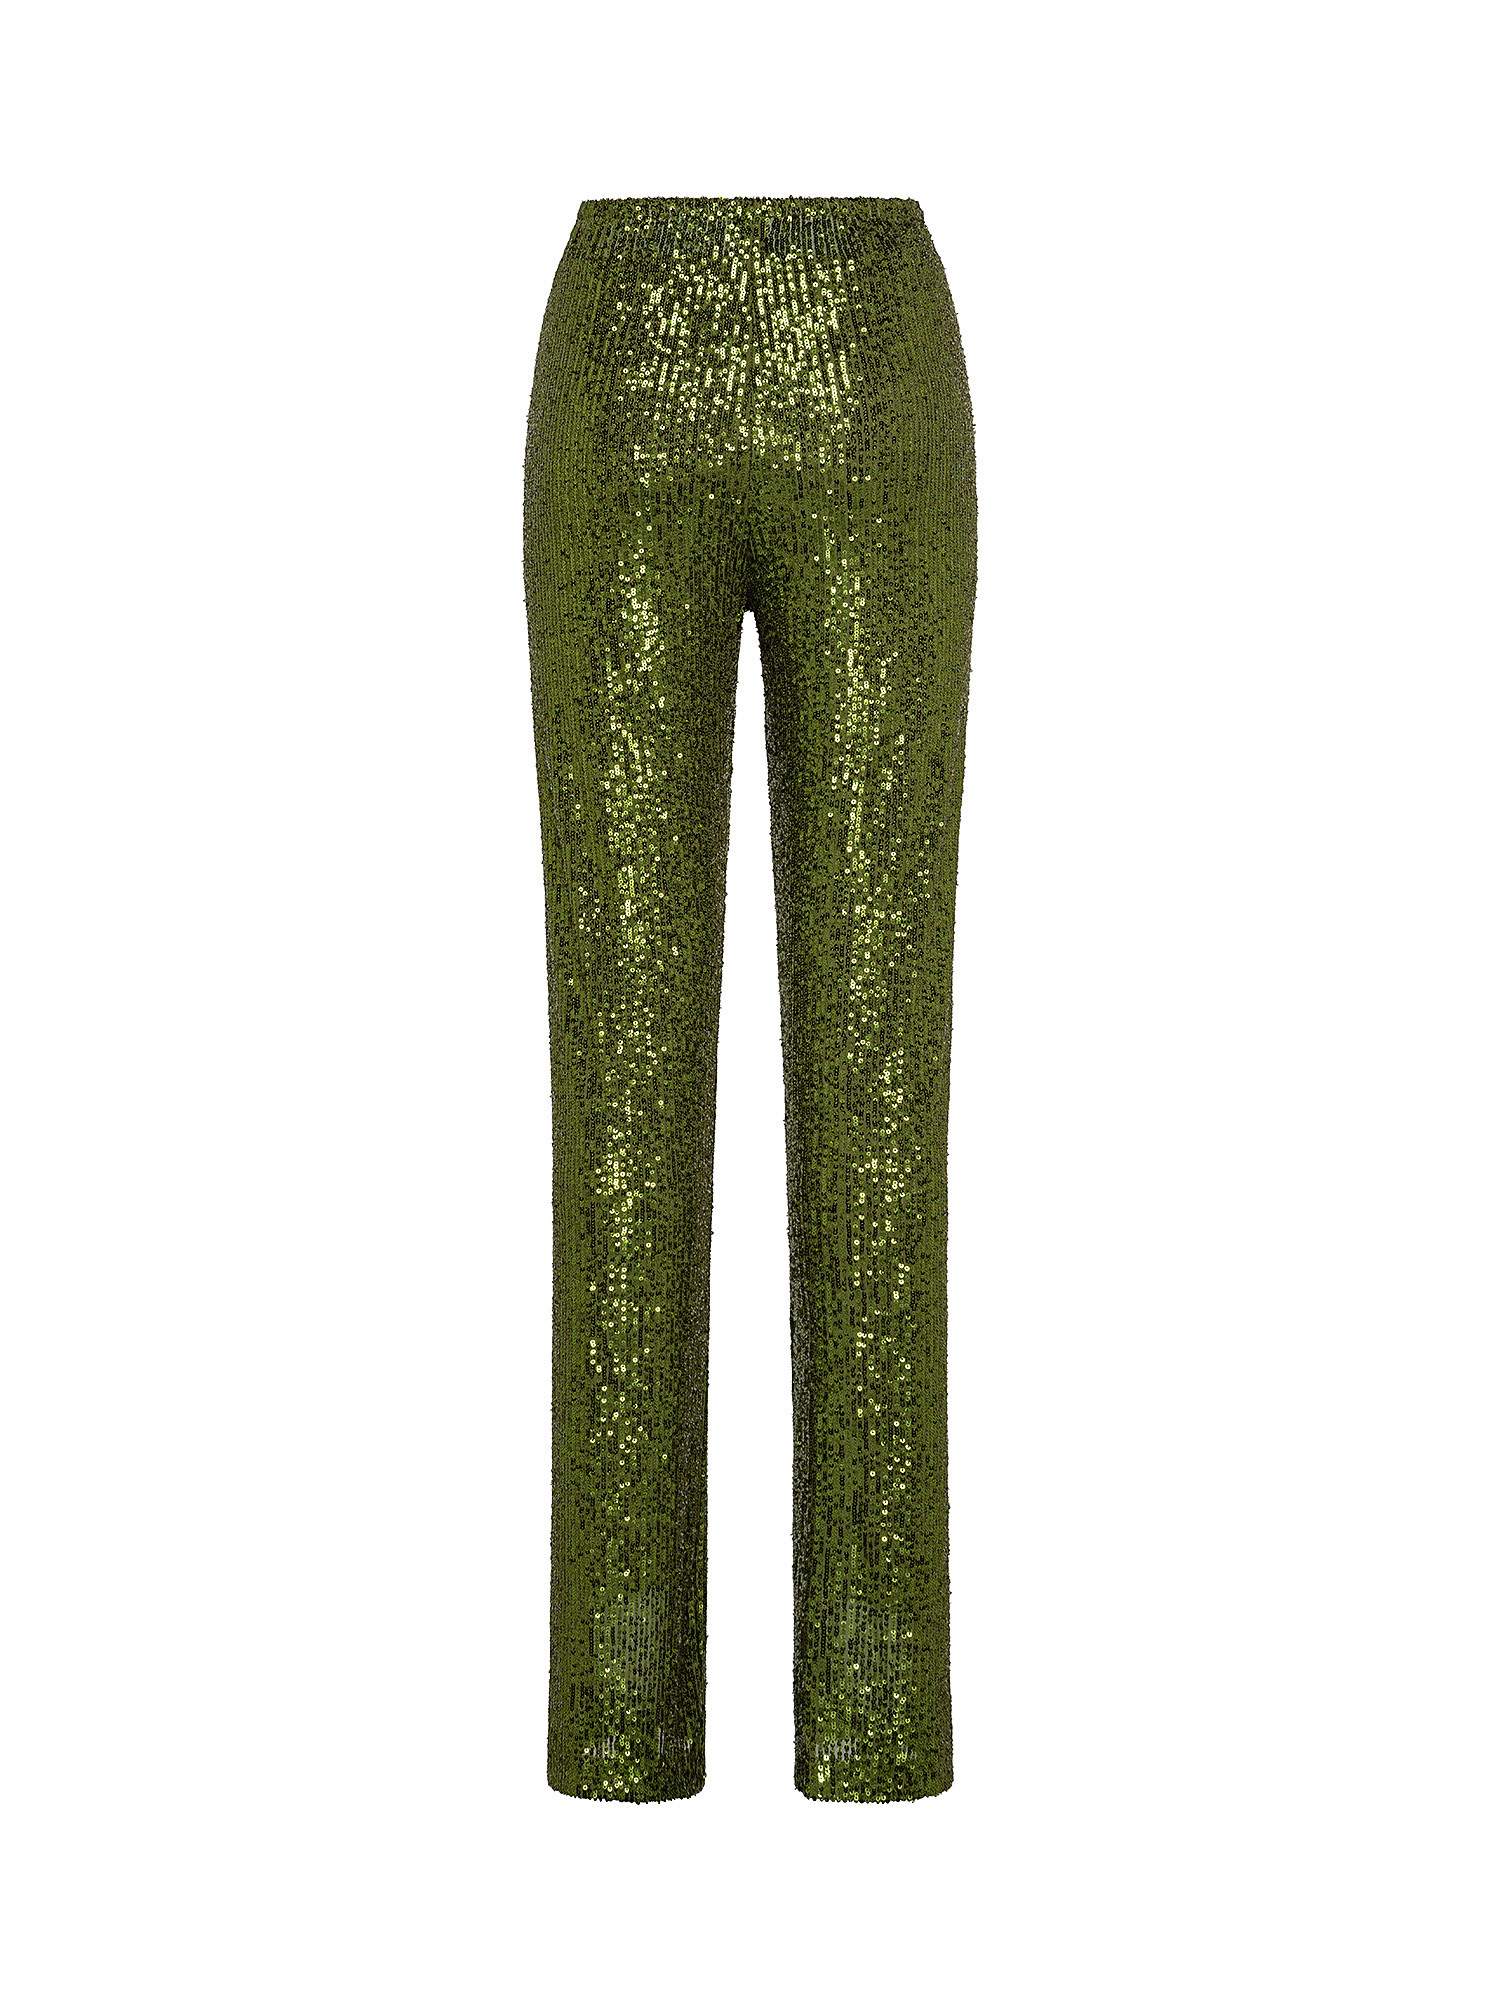 Pantalone con paillettes, Verde, large image number 1